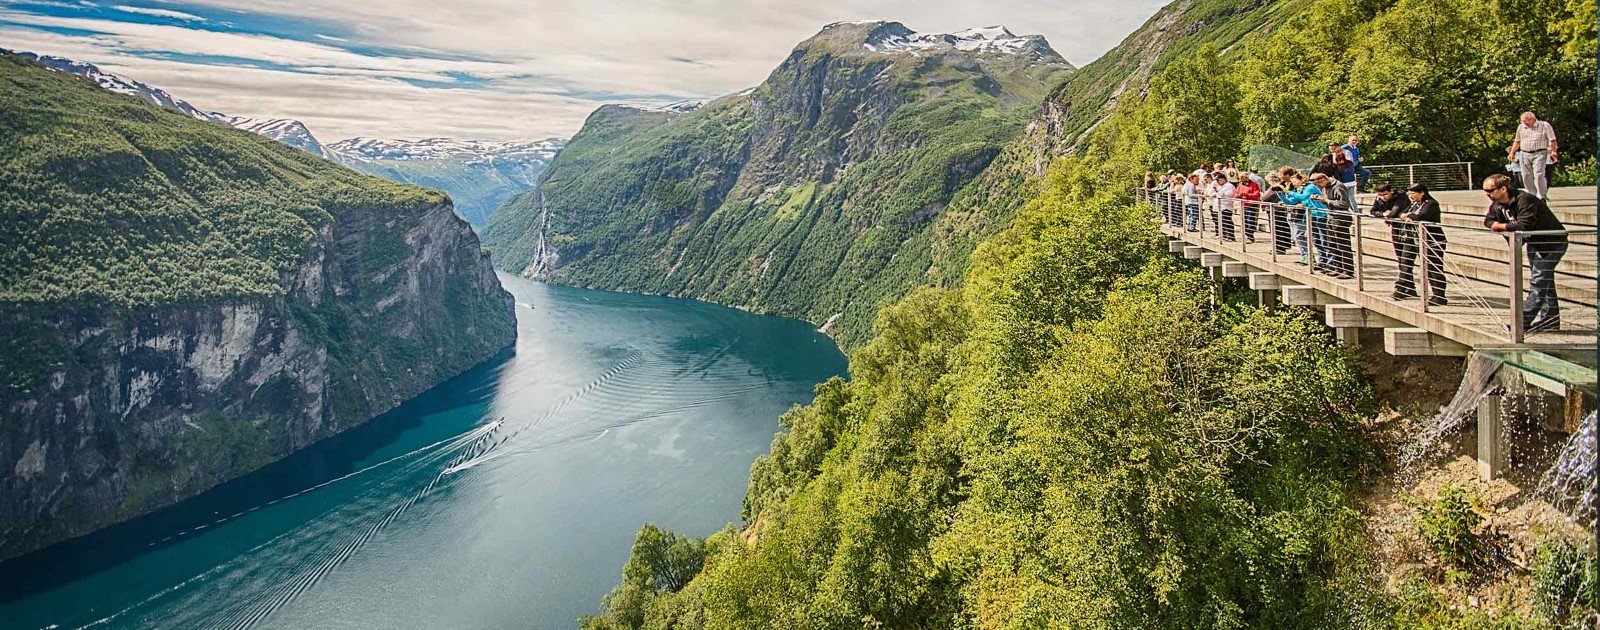 The Norwegian Fjords Hurtigruten Norwegian Coastal Express